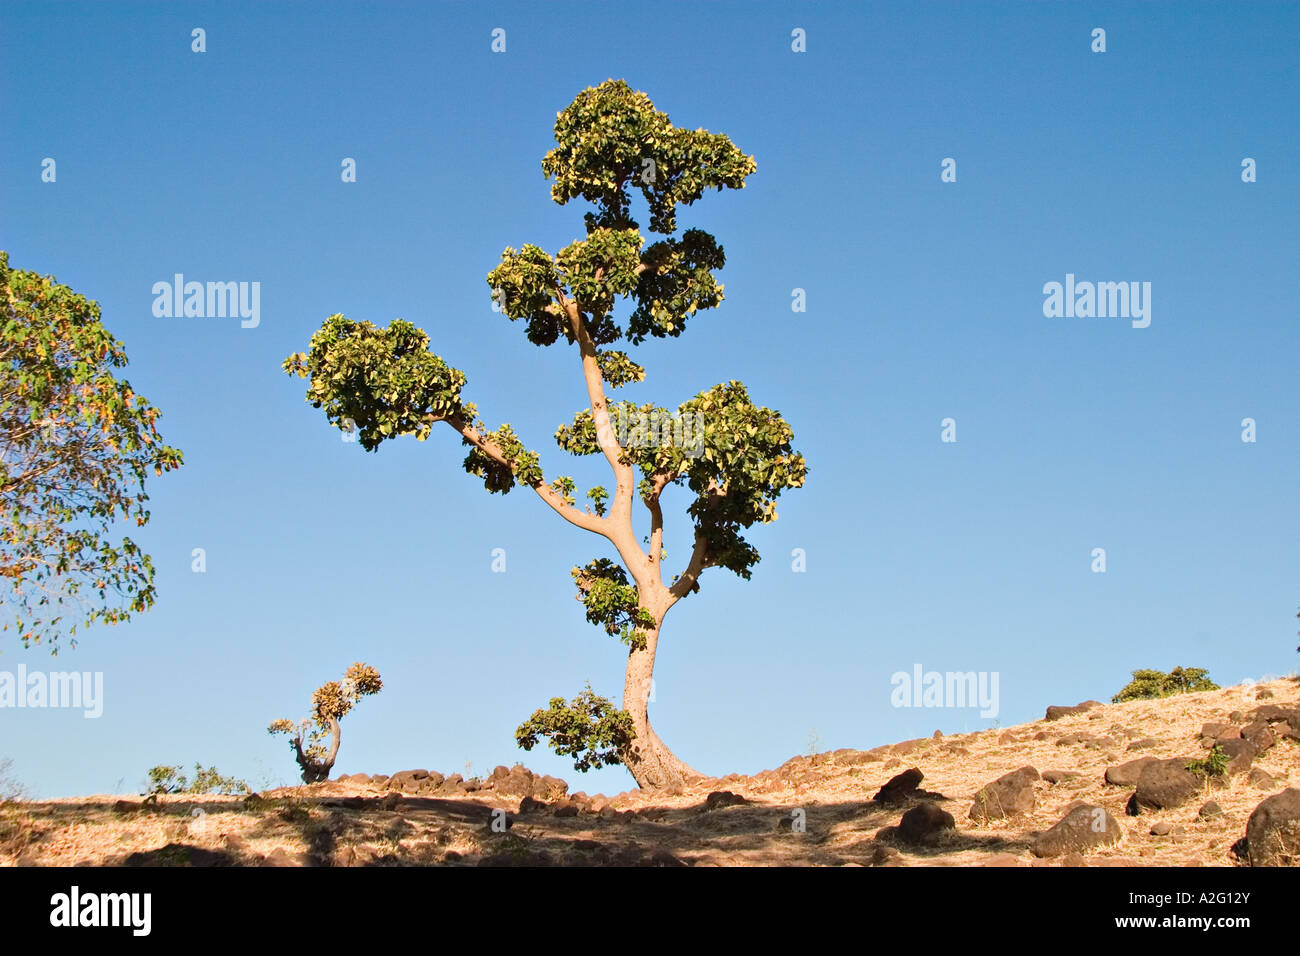 La plantation d'arbres par les chutes du Nil Bleu, Tis Issat, Lac Tana, Ethiopie, Afrique Banque D'Images